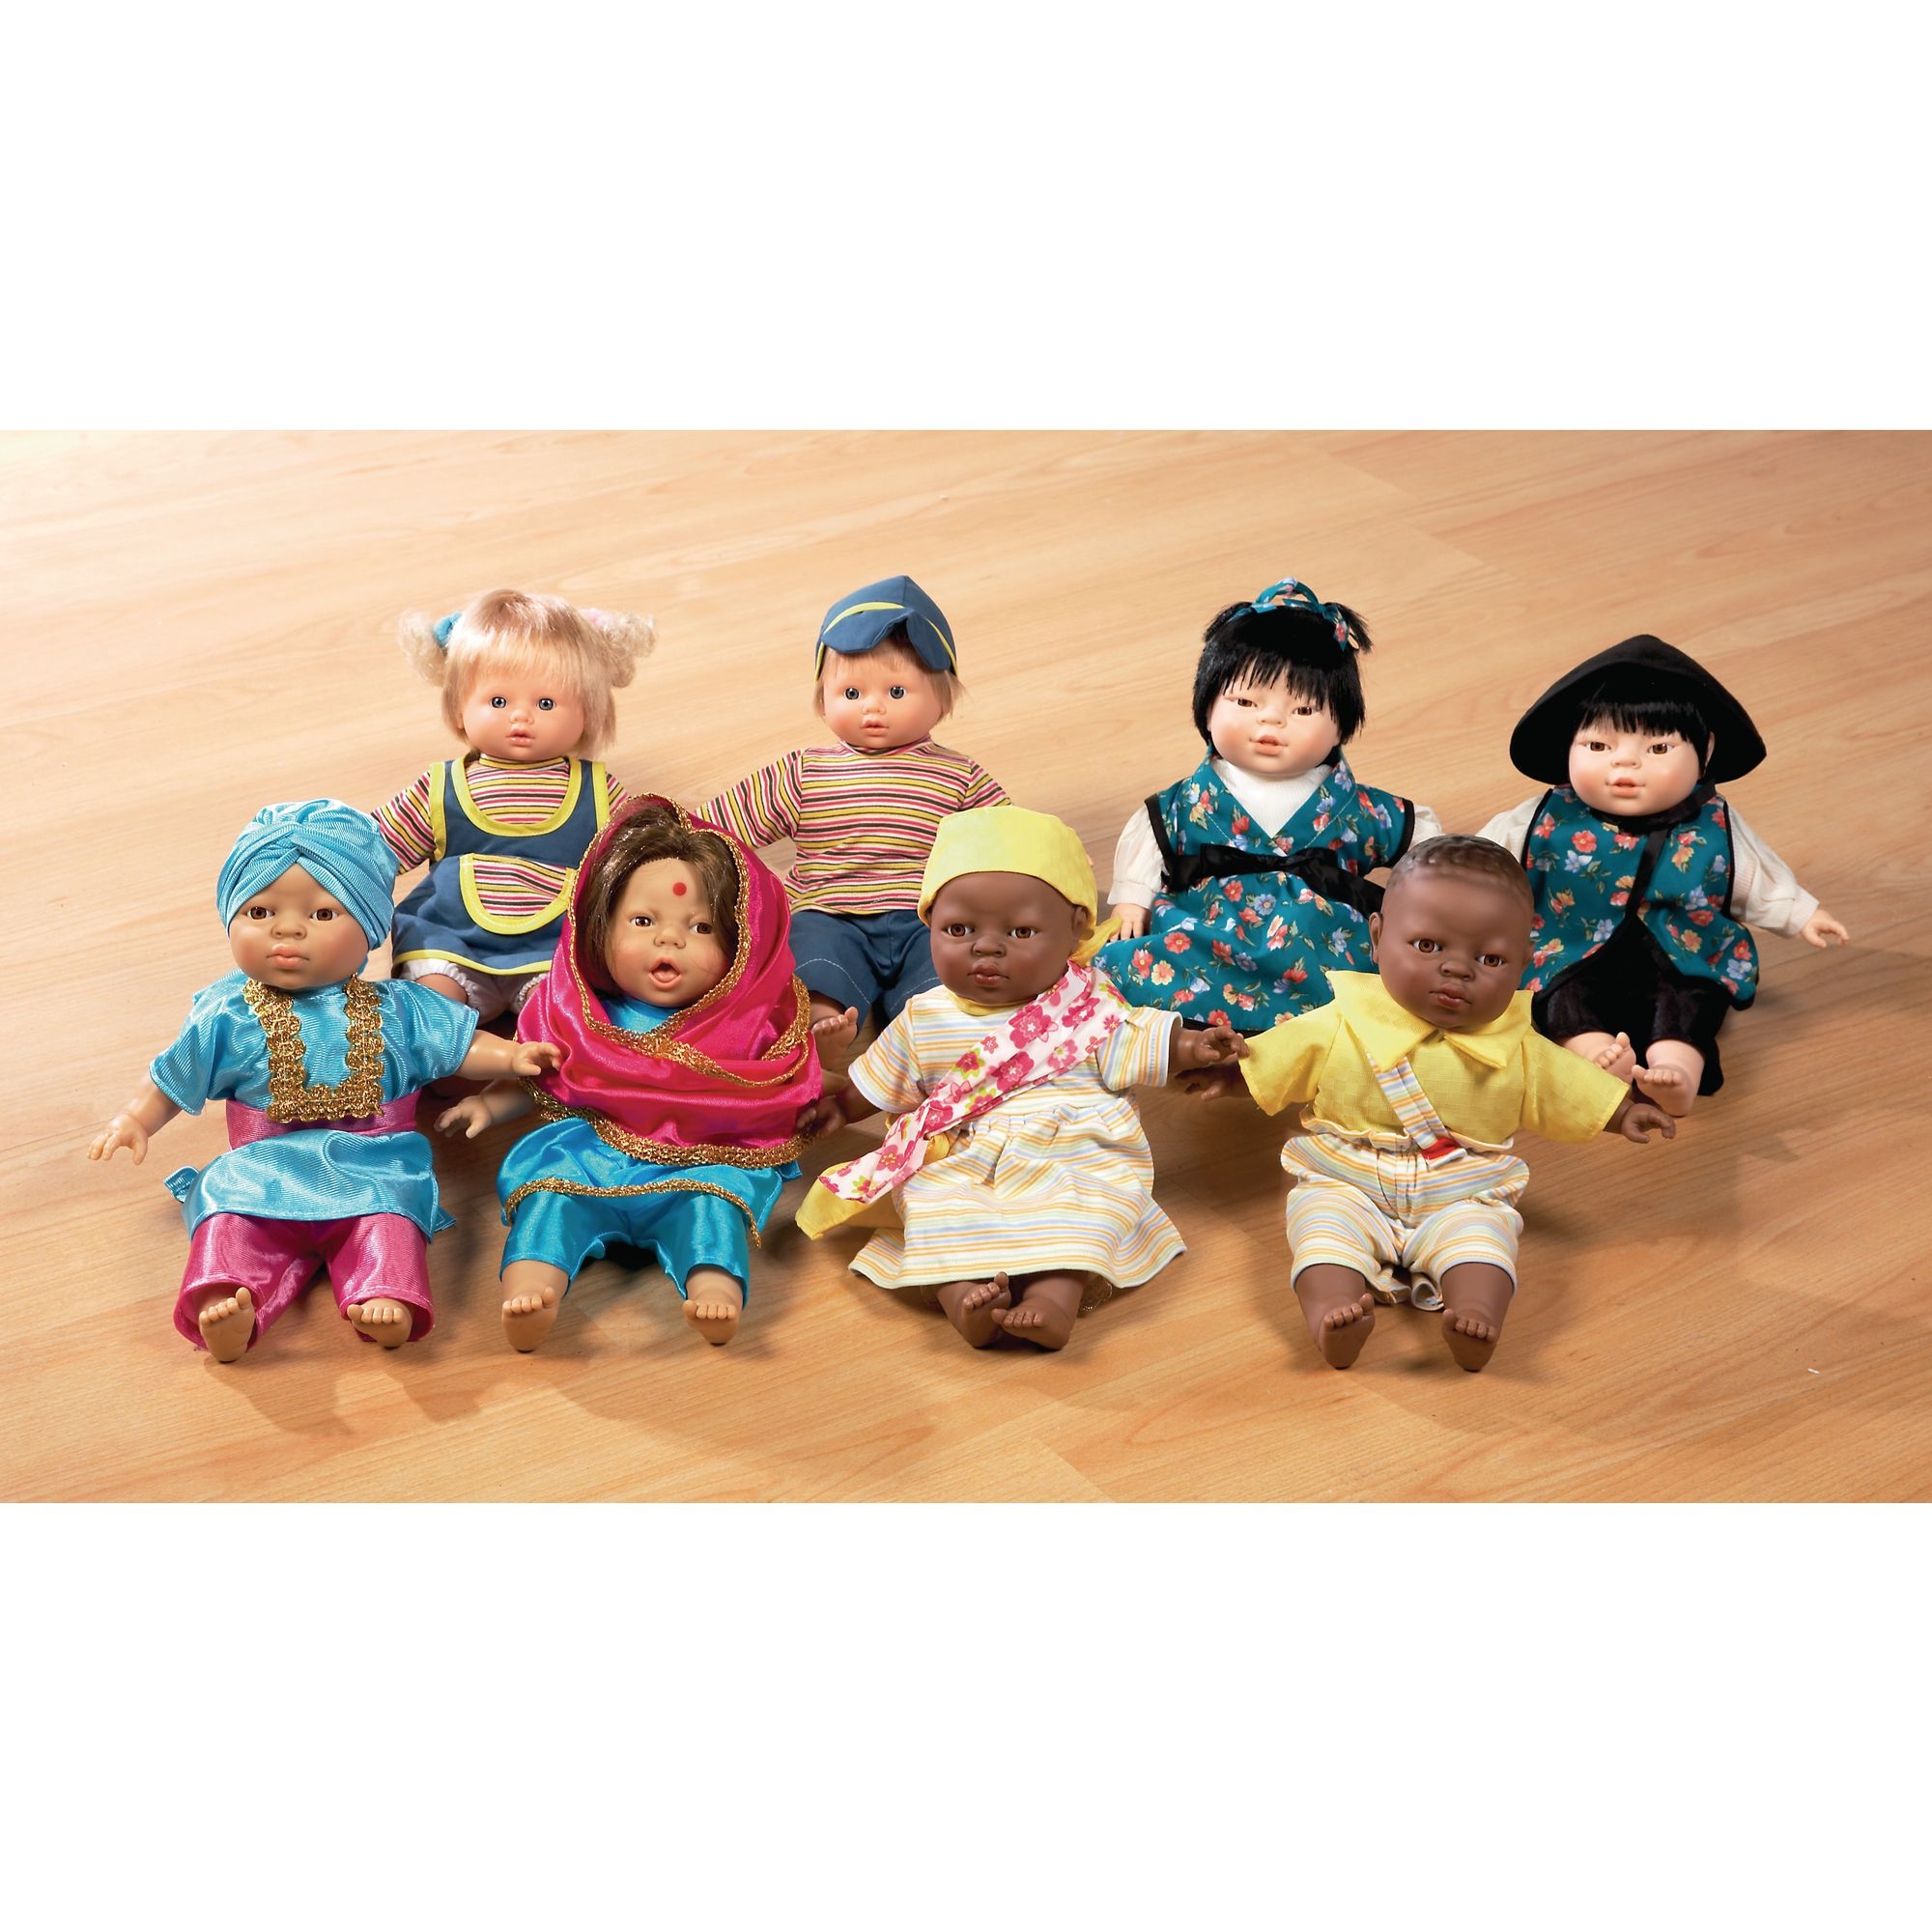 Children of the World Soft-bodied Dolls: Alex